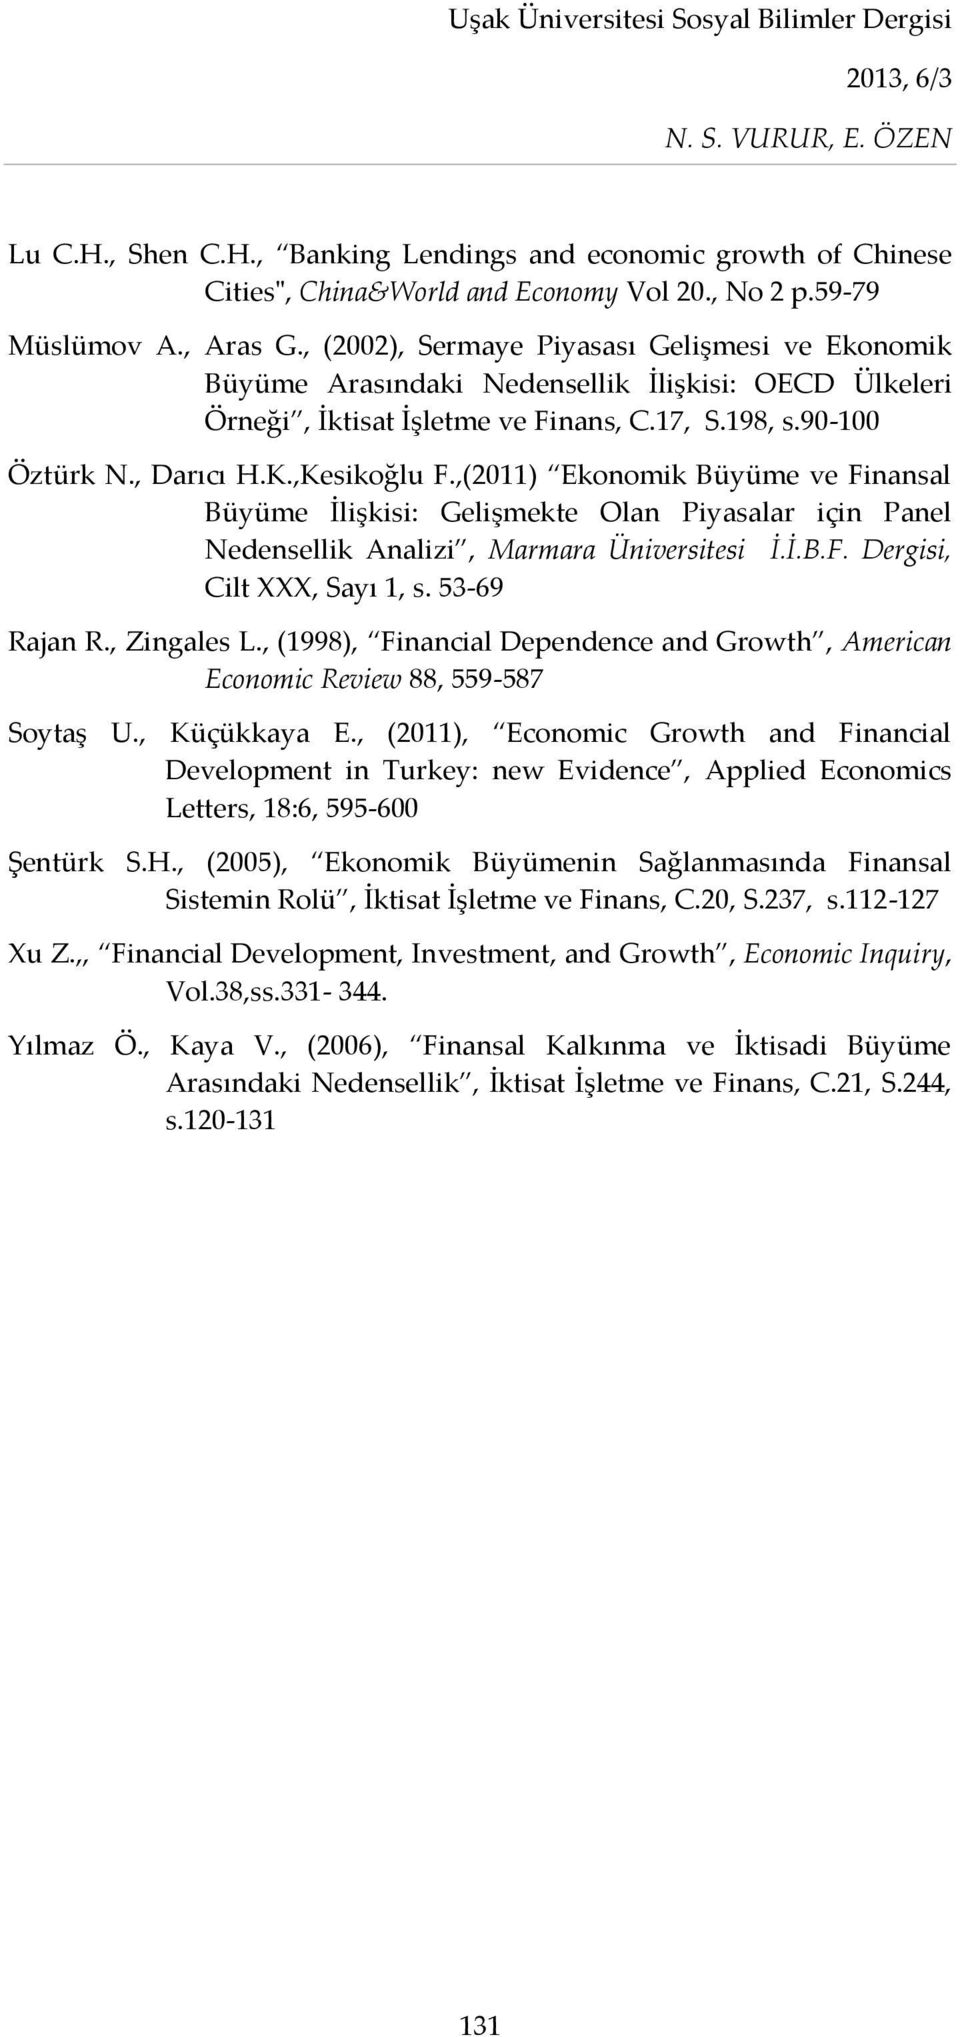 ,(2011) Ekonomik Büyüme ve Finansal Büyüme İlişkisi: Gelişmekte Olan Piyasalar için Panel Nedensellik Analizi, Marmara Üniversitesi İ.İ.B.F. Dergisi, Cilt XXX, Sayı 1, s. 53-69 Rajan R., Zingales L.